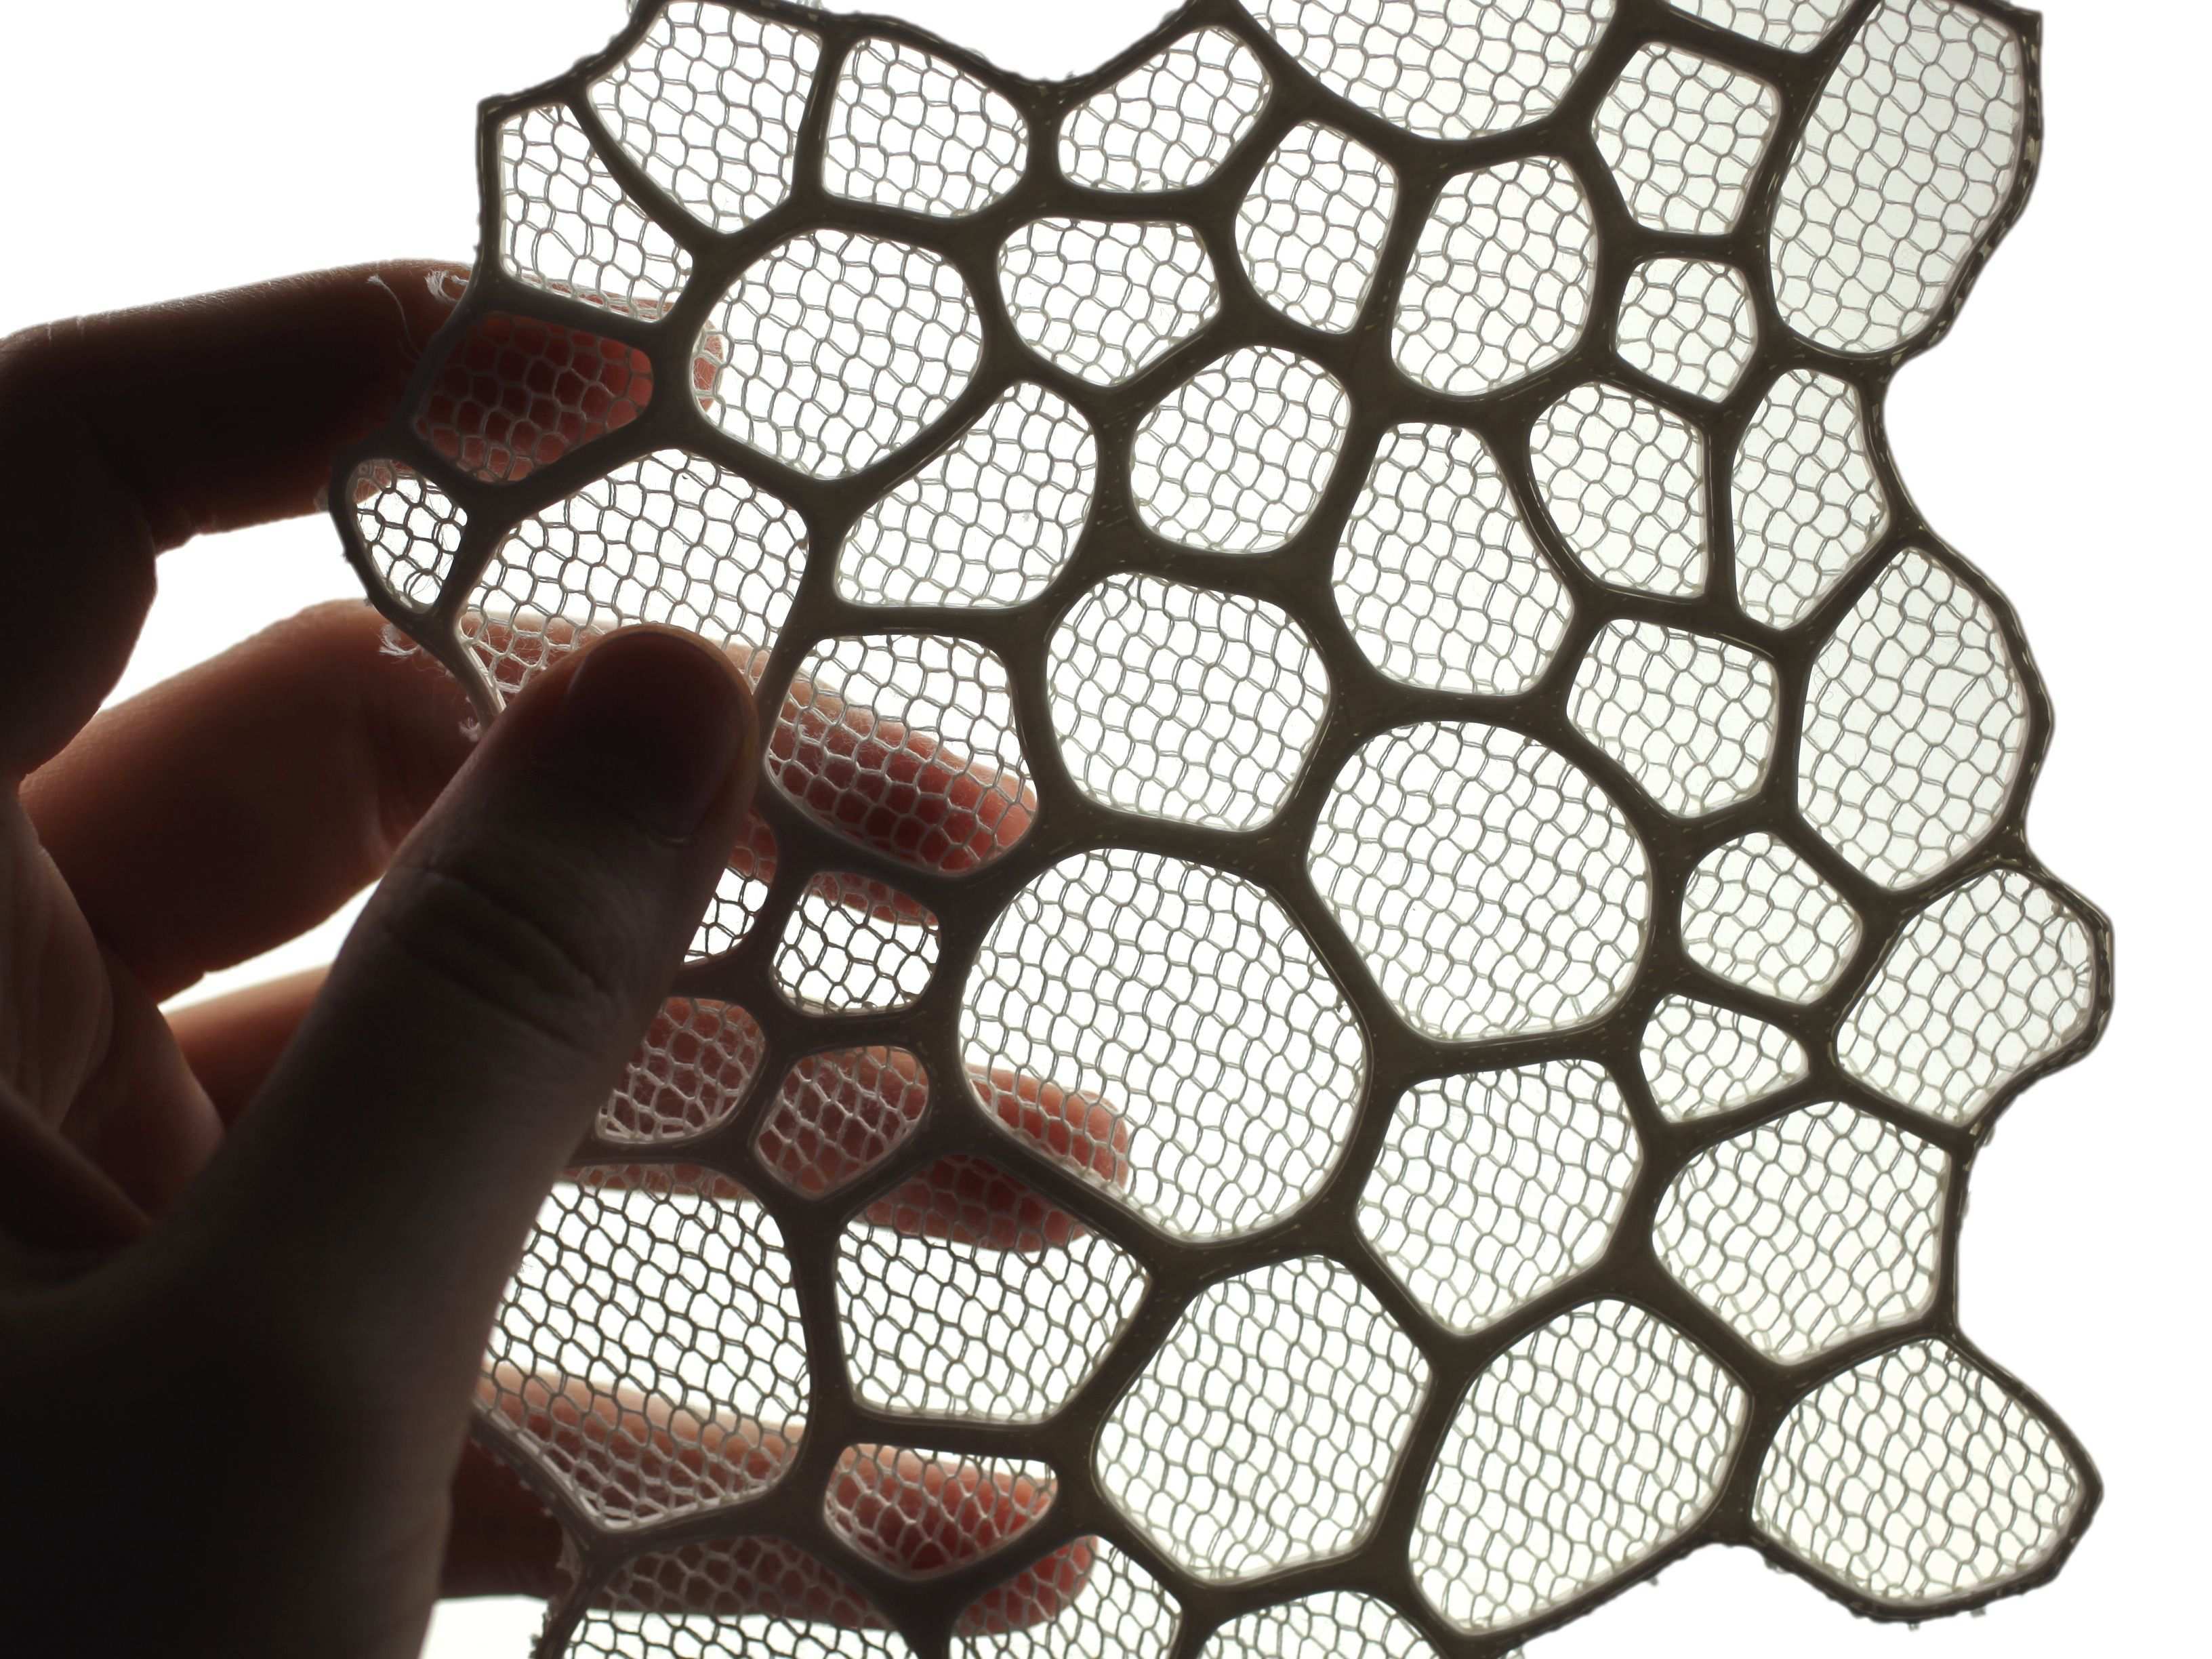 Dorothea Lang Ein Druck Textile Flachengestaltung Mit 3d Druck Parametrisches Design 3d Druck Design Drucken